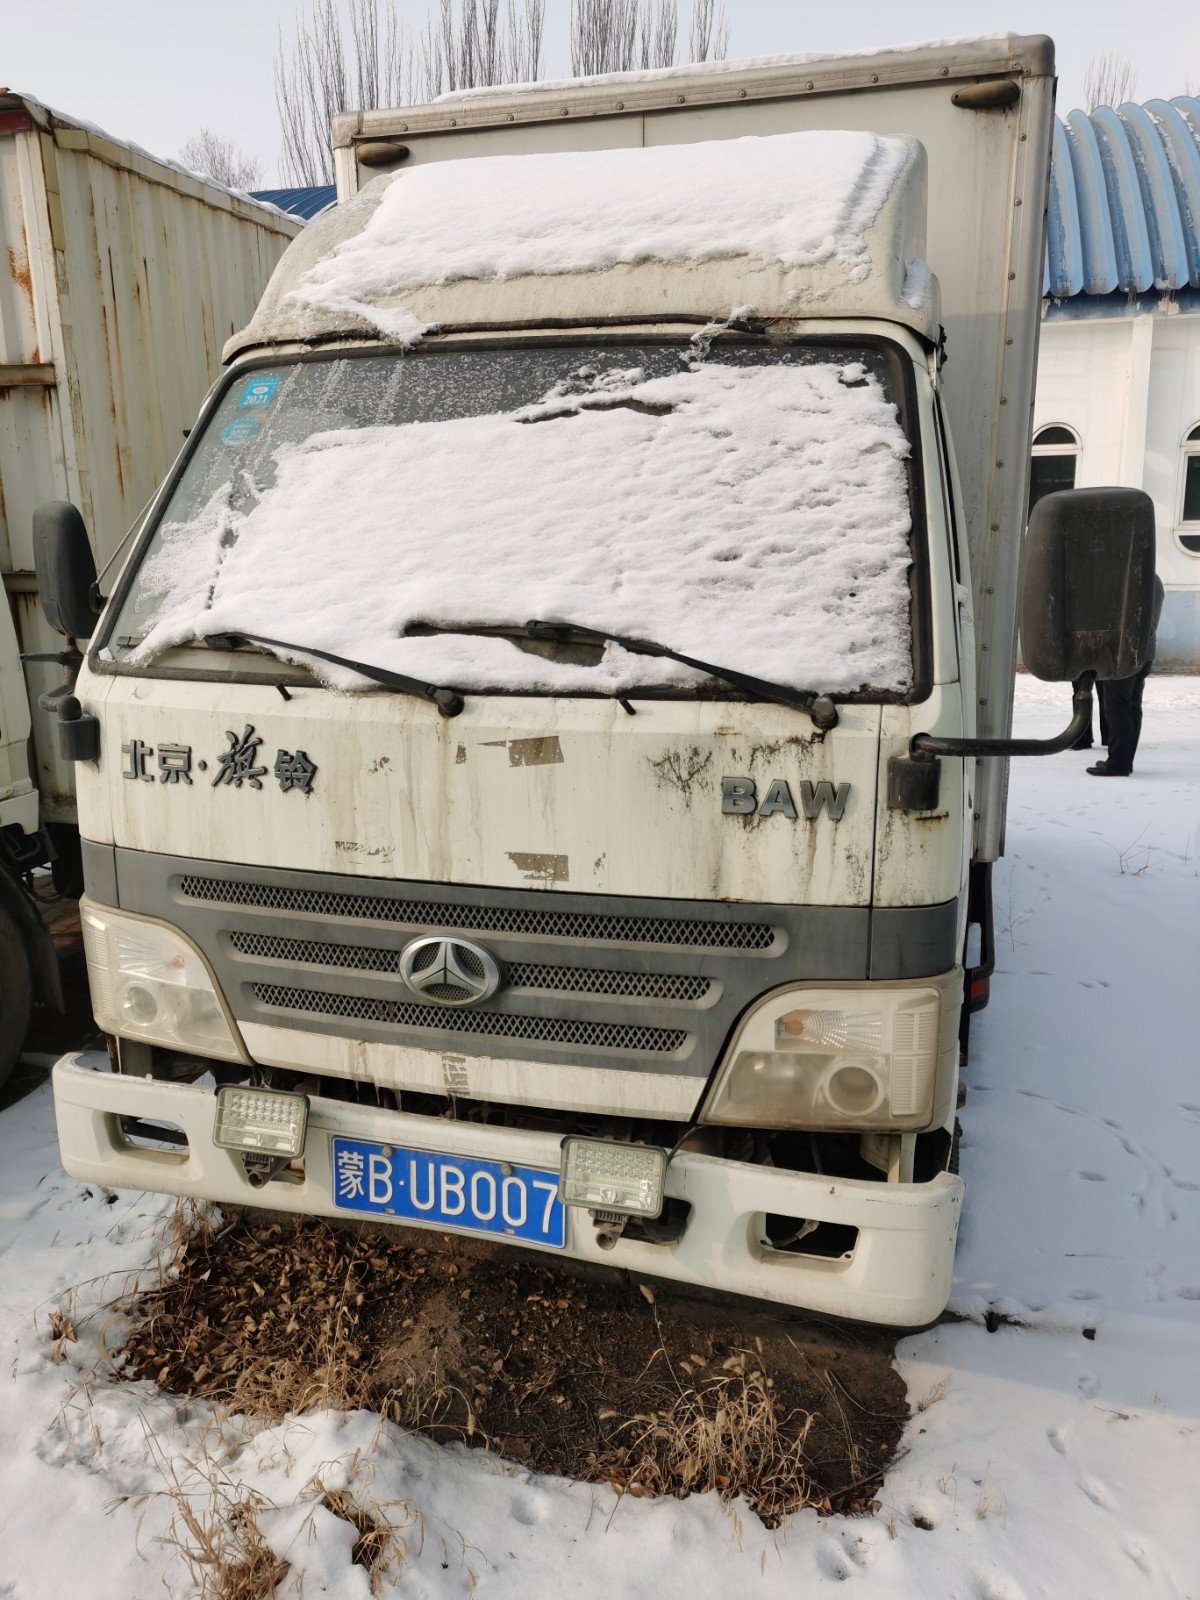 北京牌轻型厢式货车（蒙BUB007）（车辆状态逾期未检验，达到报废标准）拍卖公告